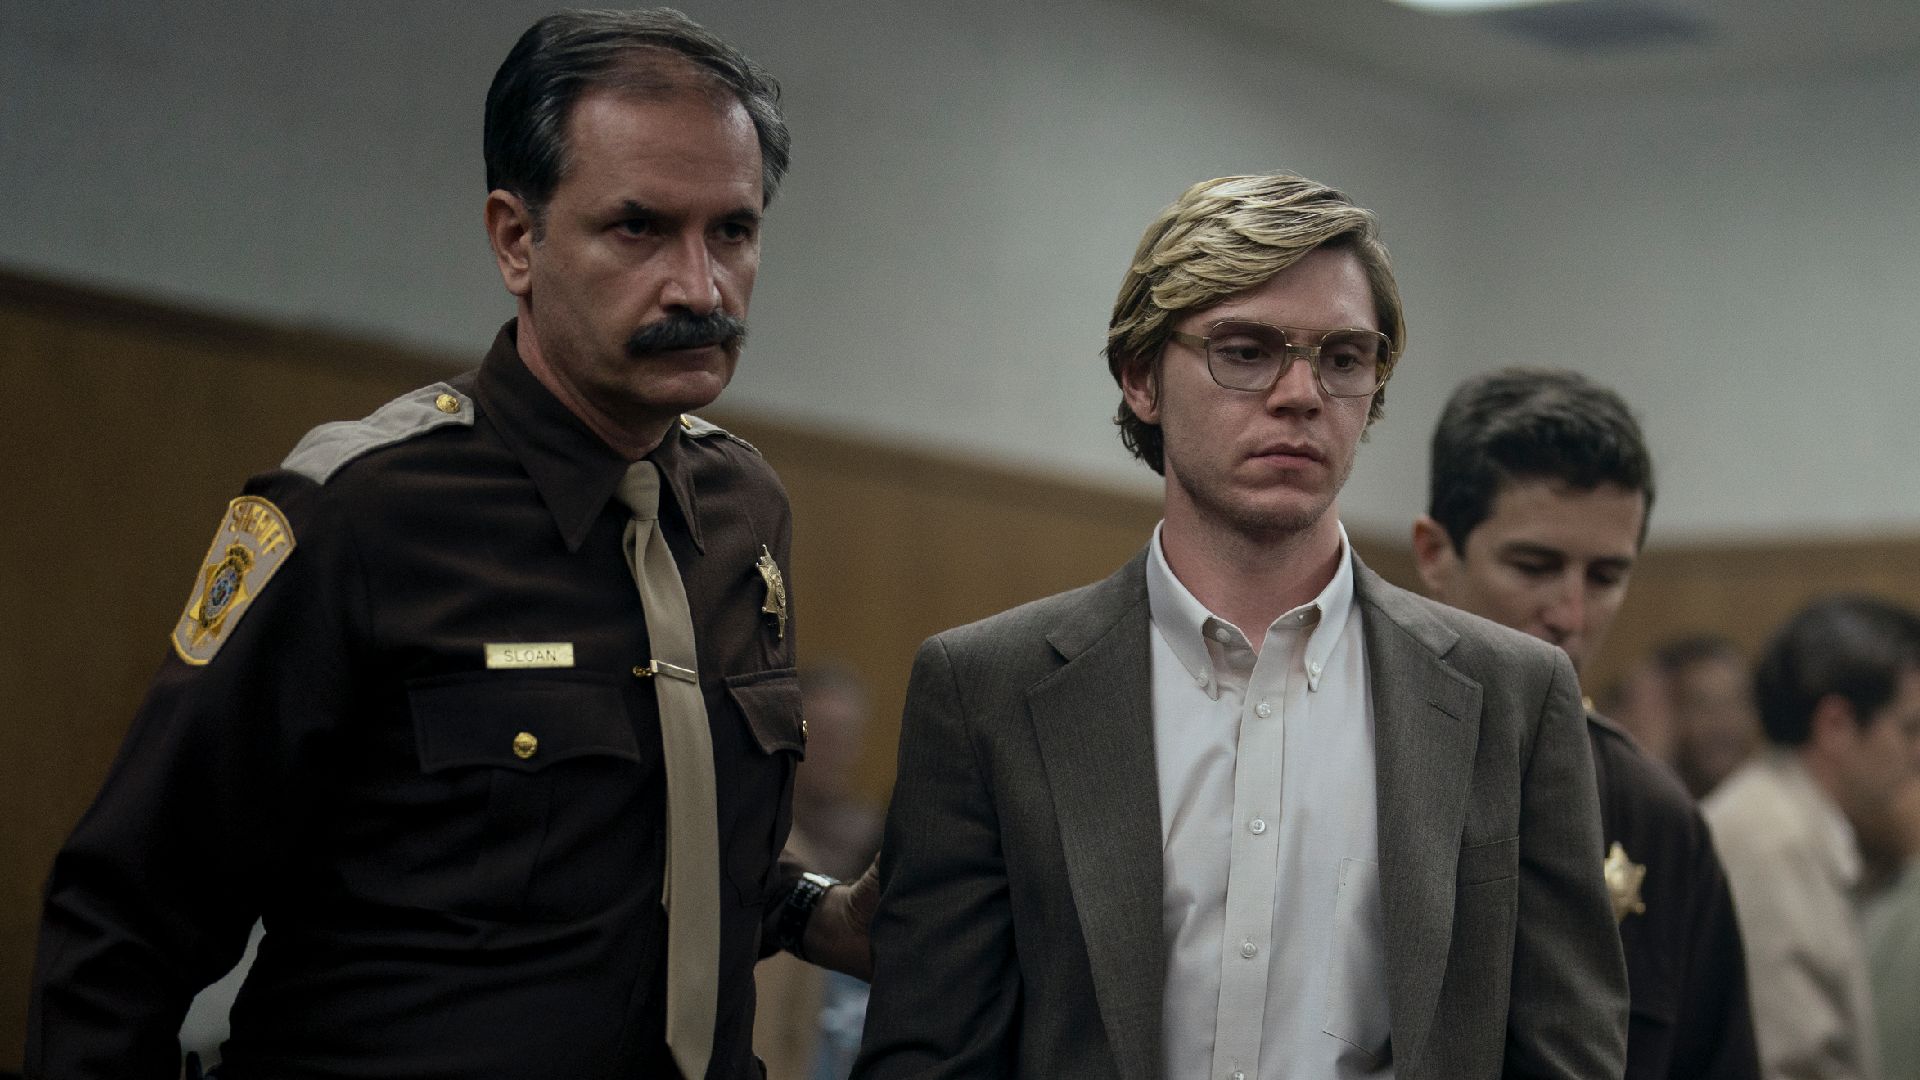 El asesino y caníbal Jefrrey Dahmer fue interpretado por el actor Evan Peters. (Netflix)